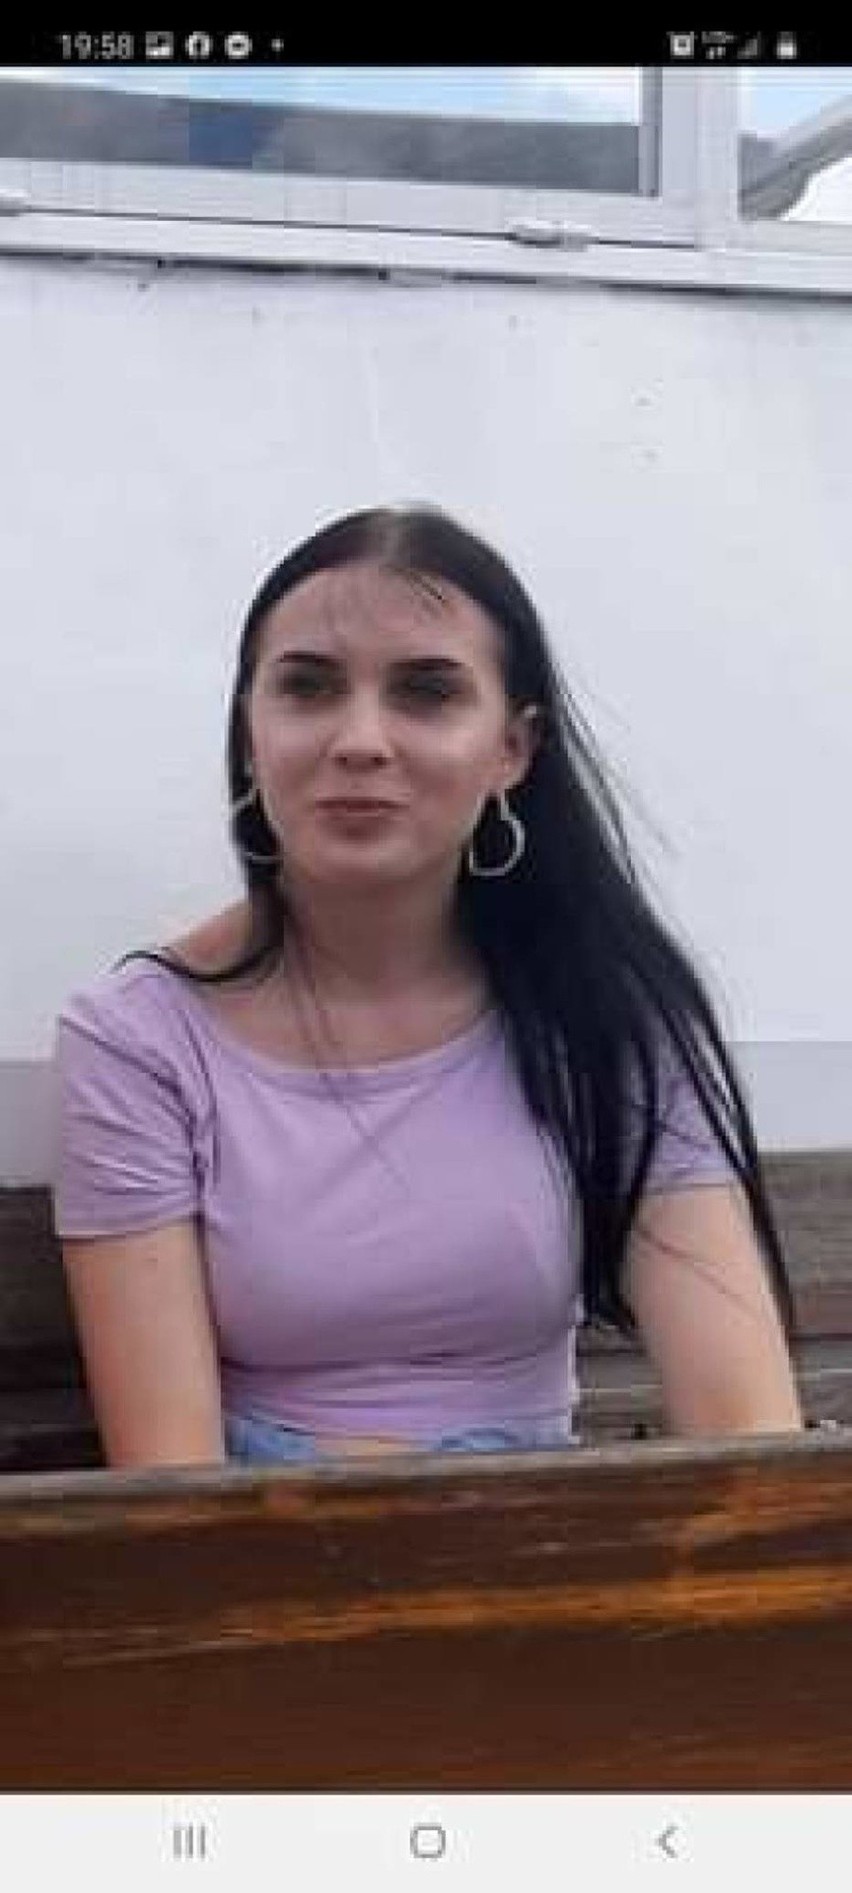 Widzieliście ją? Zaginęła Małgorzata Kaniowska z Pucka. 16-latka ostatni raz była widziana w Goniądzu na Podlasiu